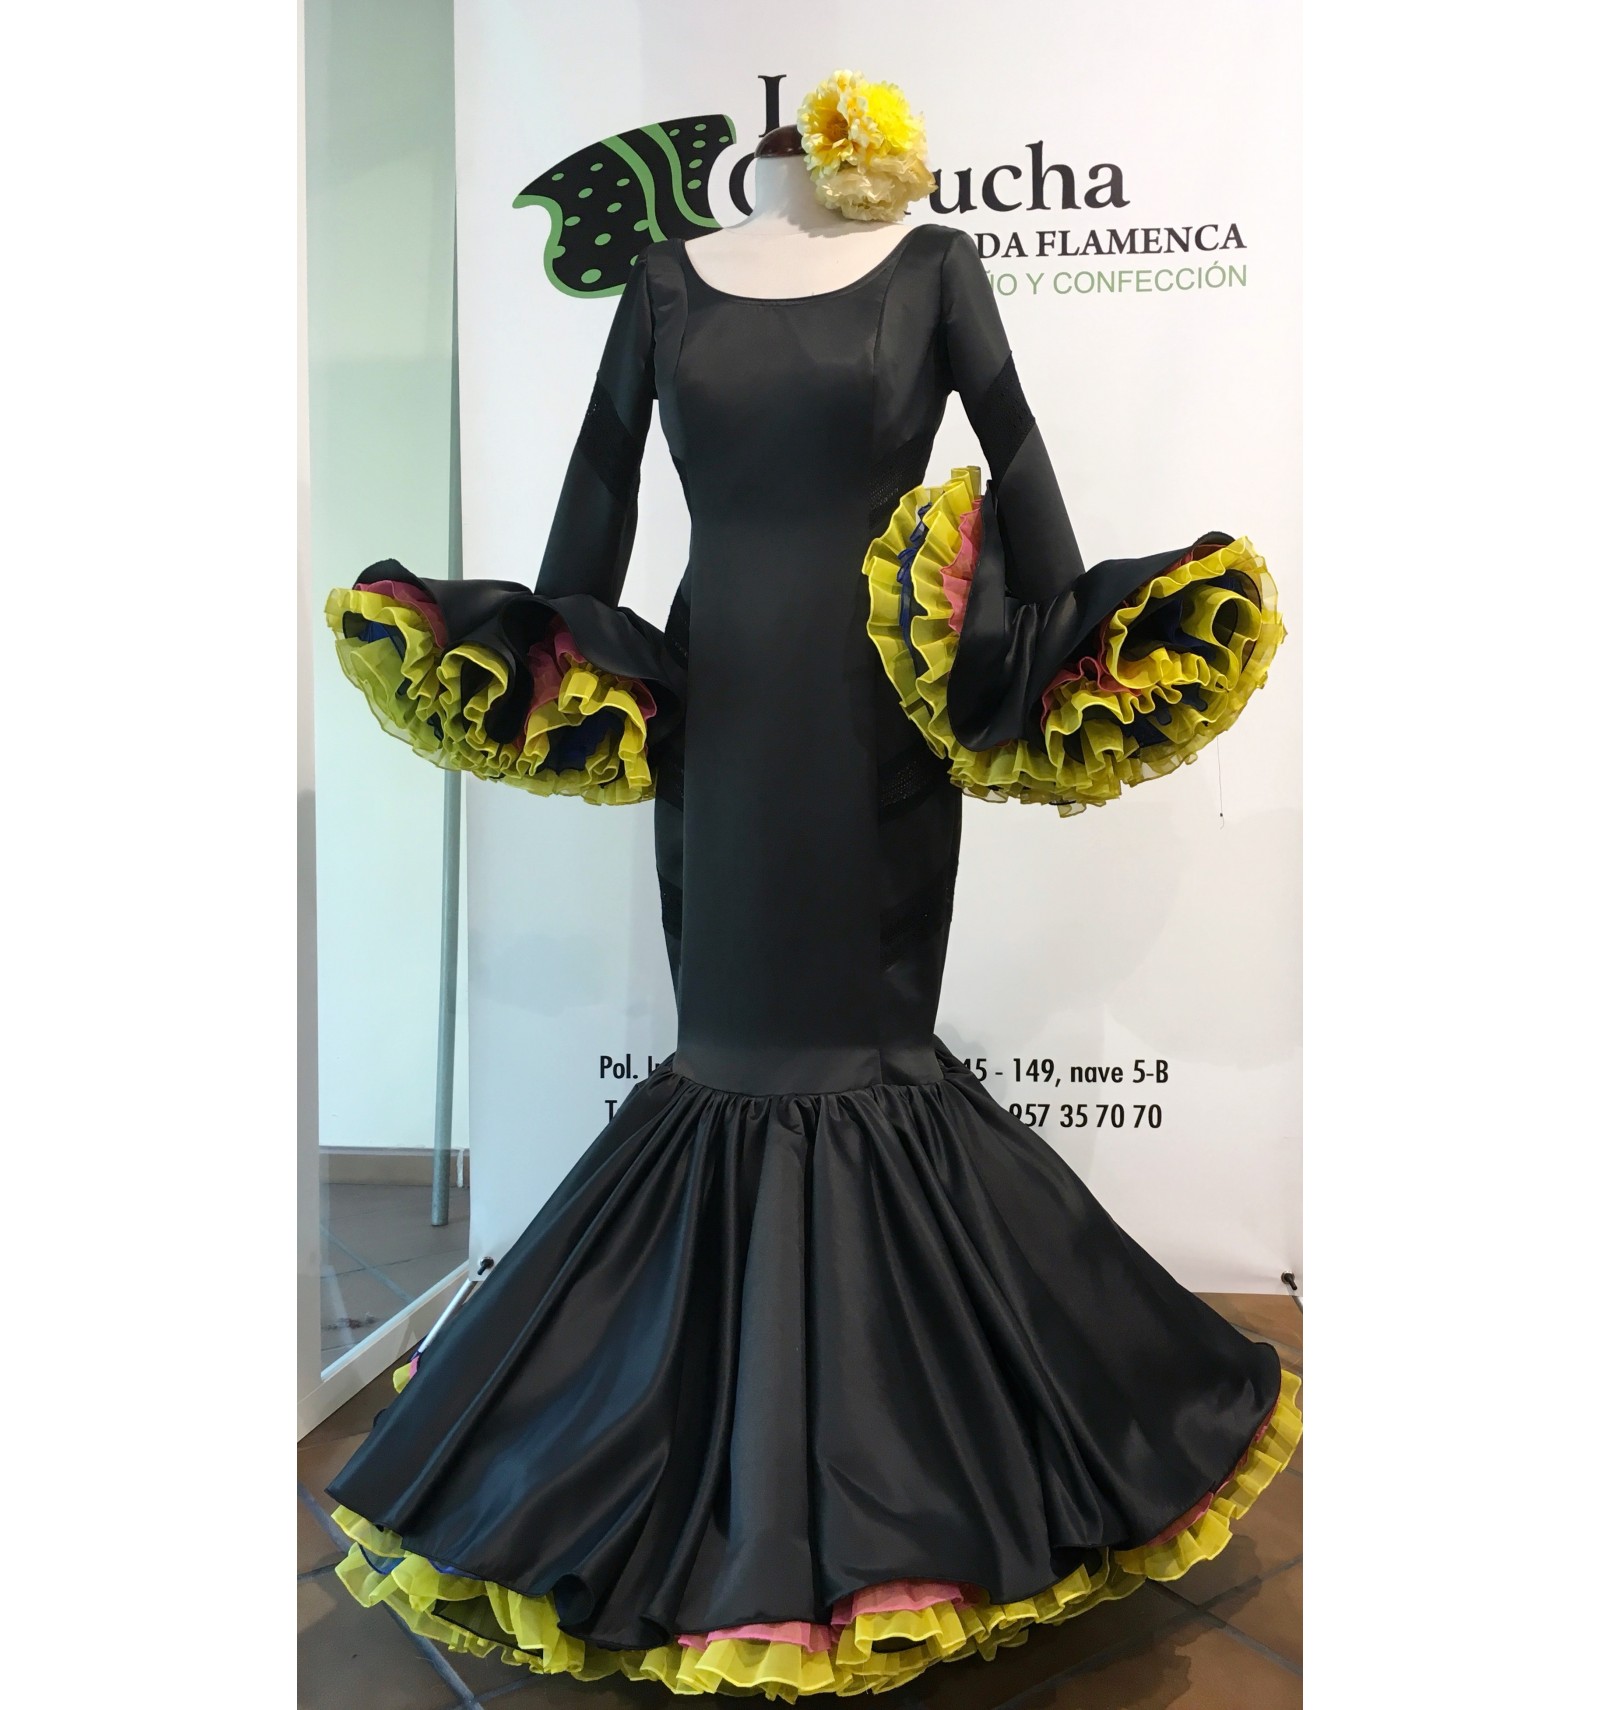 de flamenca - La Carrucha Moda Flamenca